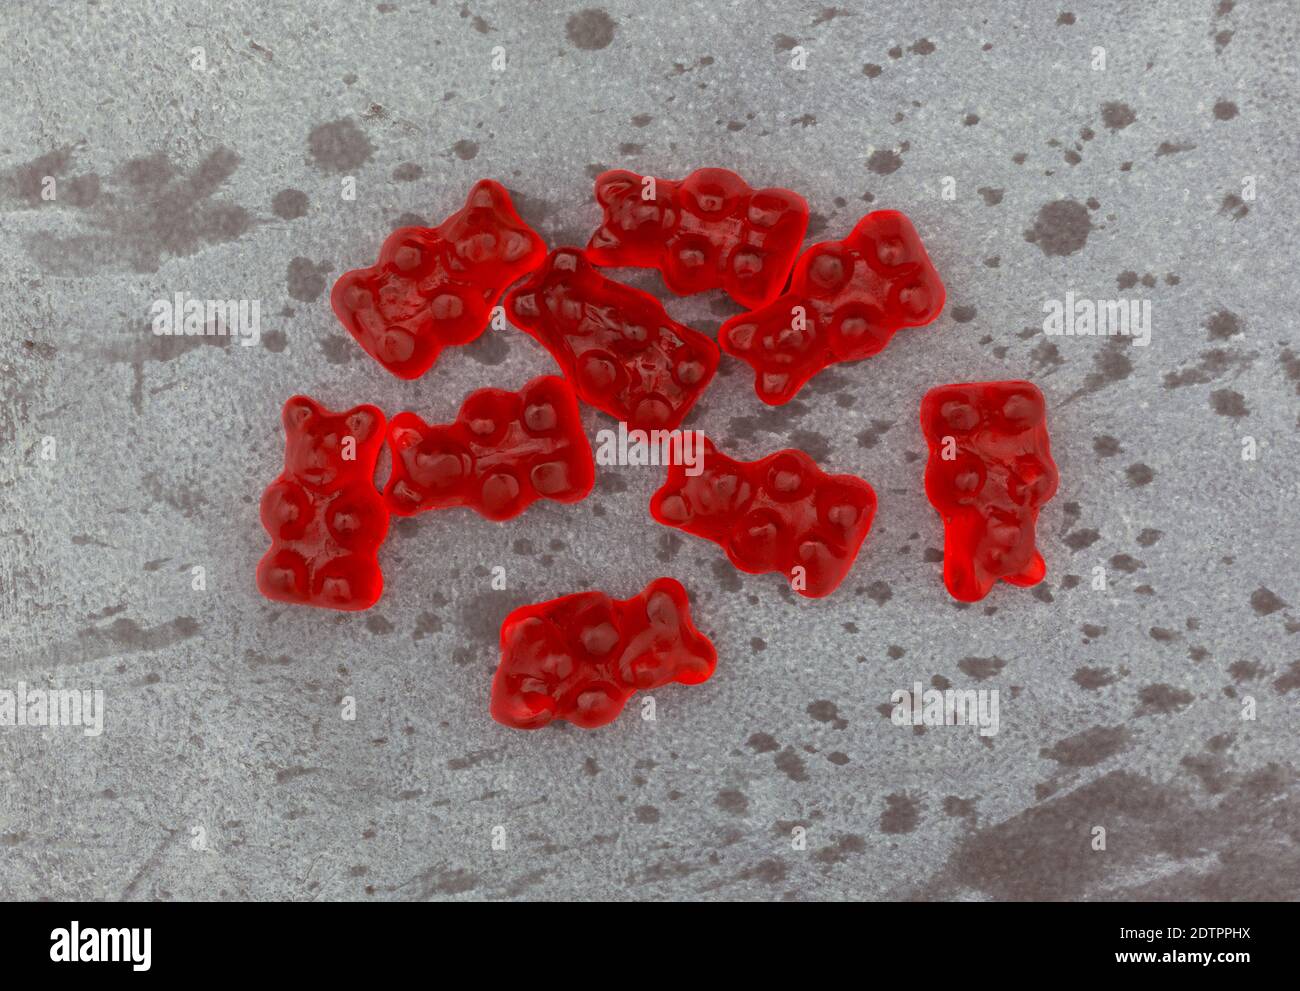 Ansicht von oben auf einem grau gesprenkelten Hintergrund einer Portion von bunten roten Gummibären Zuckerrüben. Stockfoto